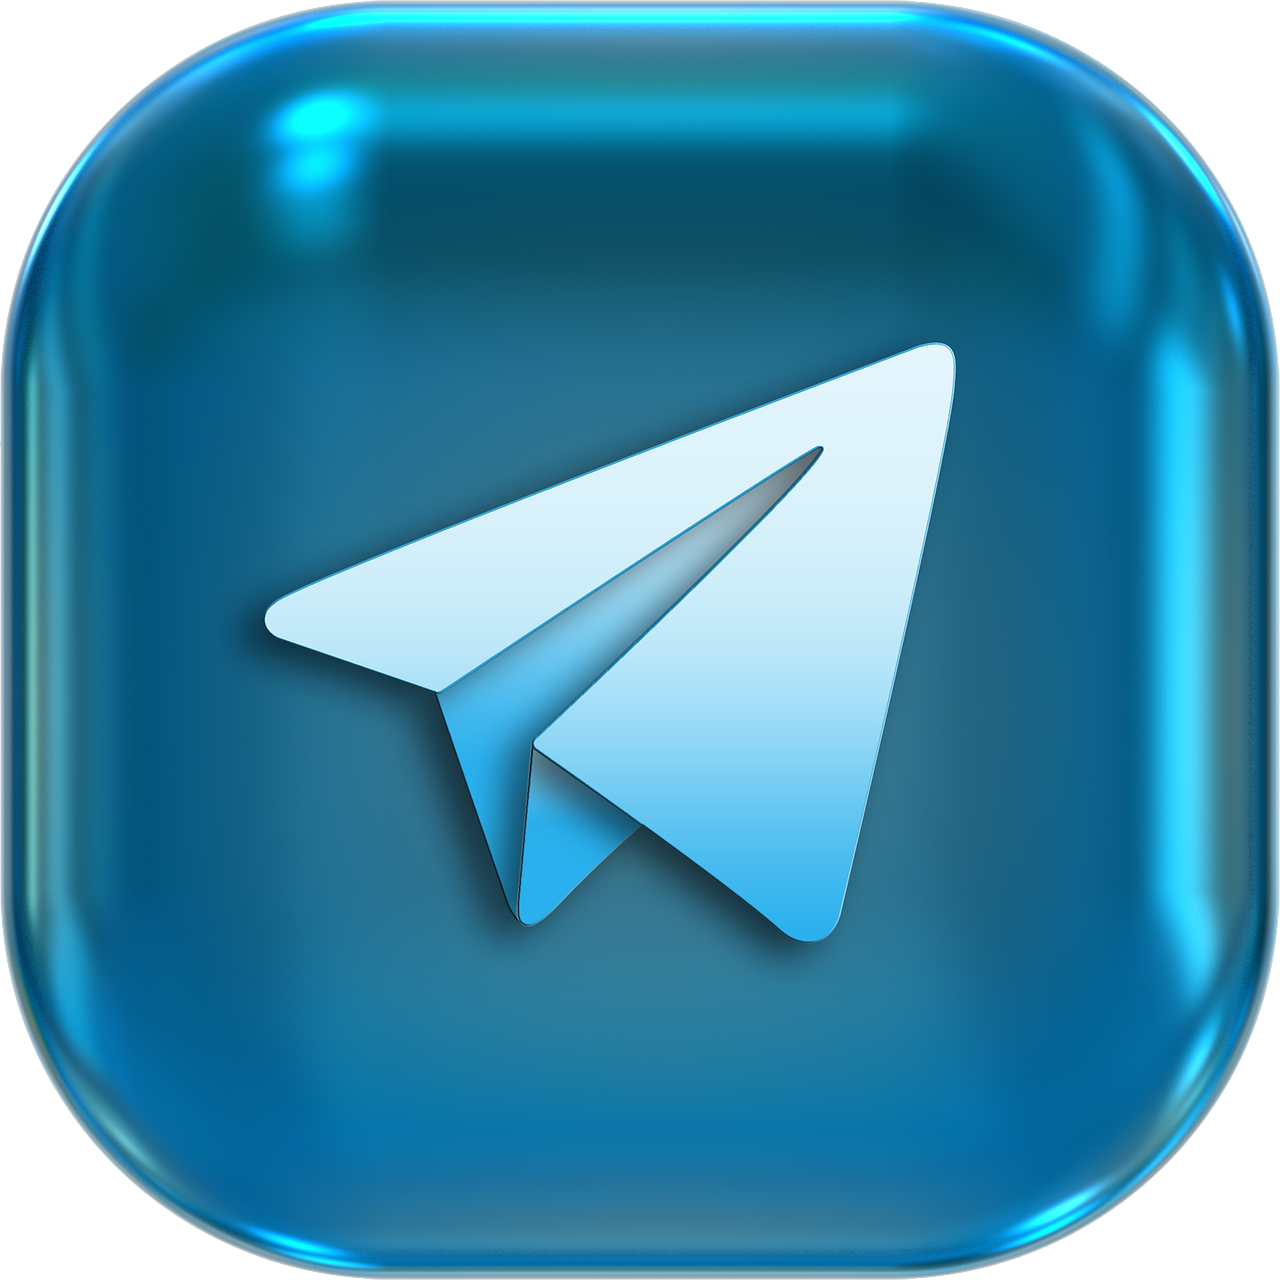 Приложения в телеграмм скачать бесплатно фото 75